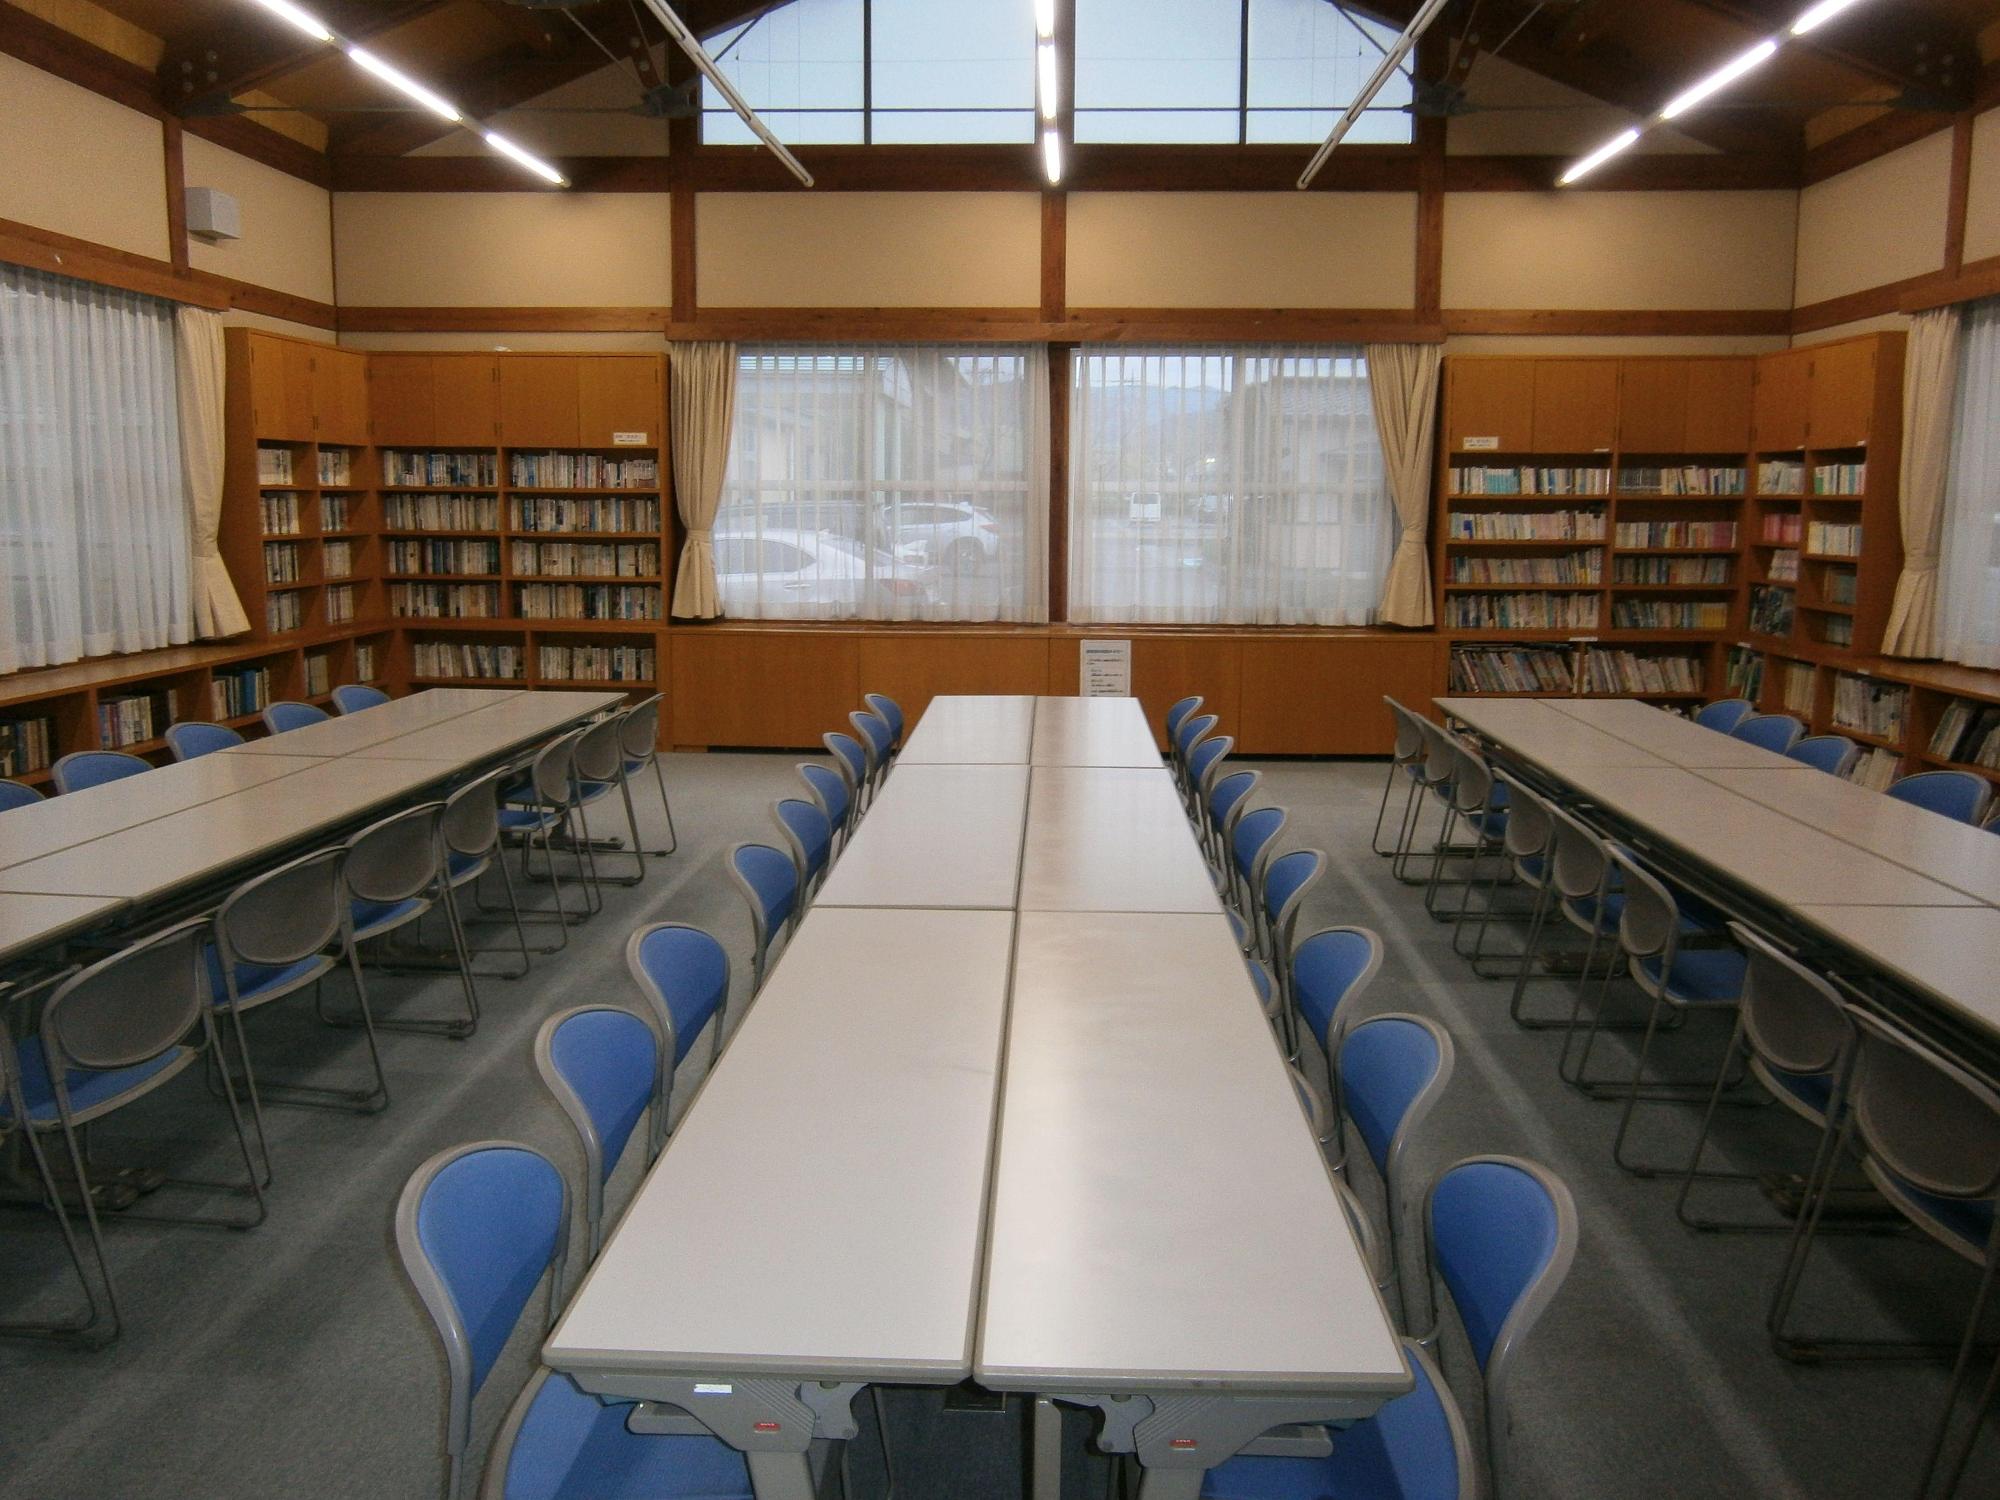 左右と奥にレースカーテンが引いてある腰高窓、窓と窓の間と窓の下に本が並び、3列に向かいあって机と椅子が設置されている図書室の写真